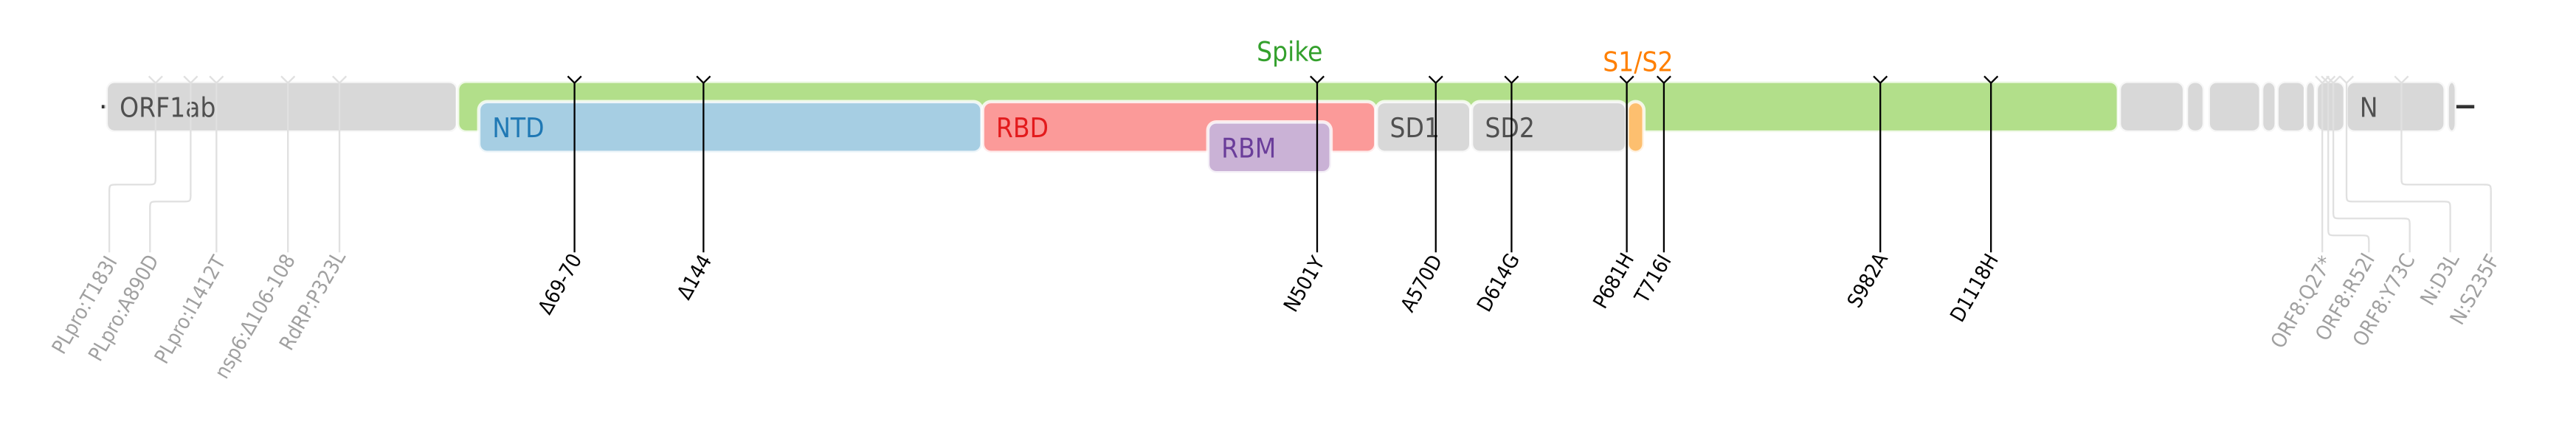 スパイクタンパク質に焦点を当てたSARS-CoV-2のゲノムマップ上にプロットされたアルファ株のアミノ酸変異。